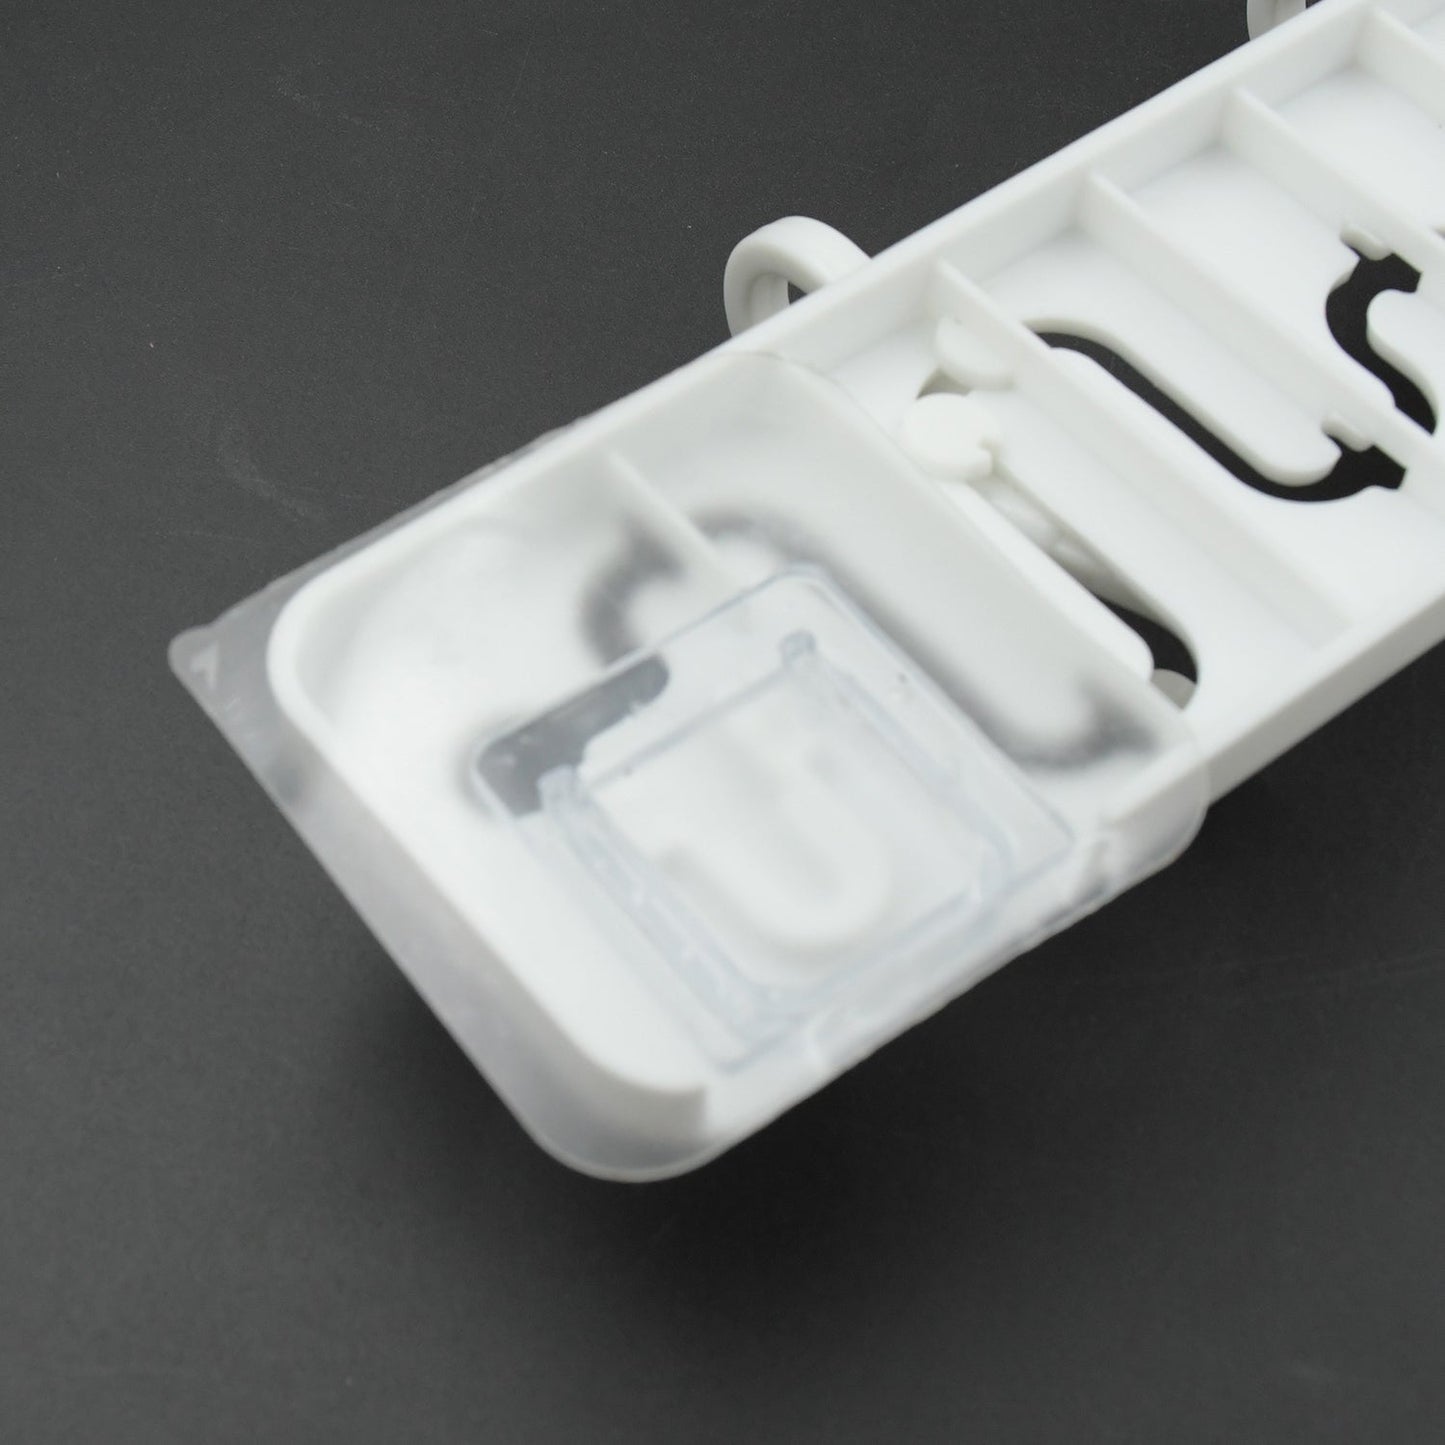 9431 SlideWay Adjustable Hook Wall Adhesive Hook Plastic High Quality Hooks For Home  & Bathroom Use